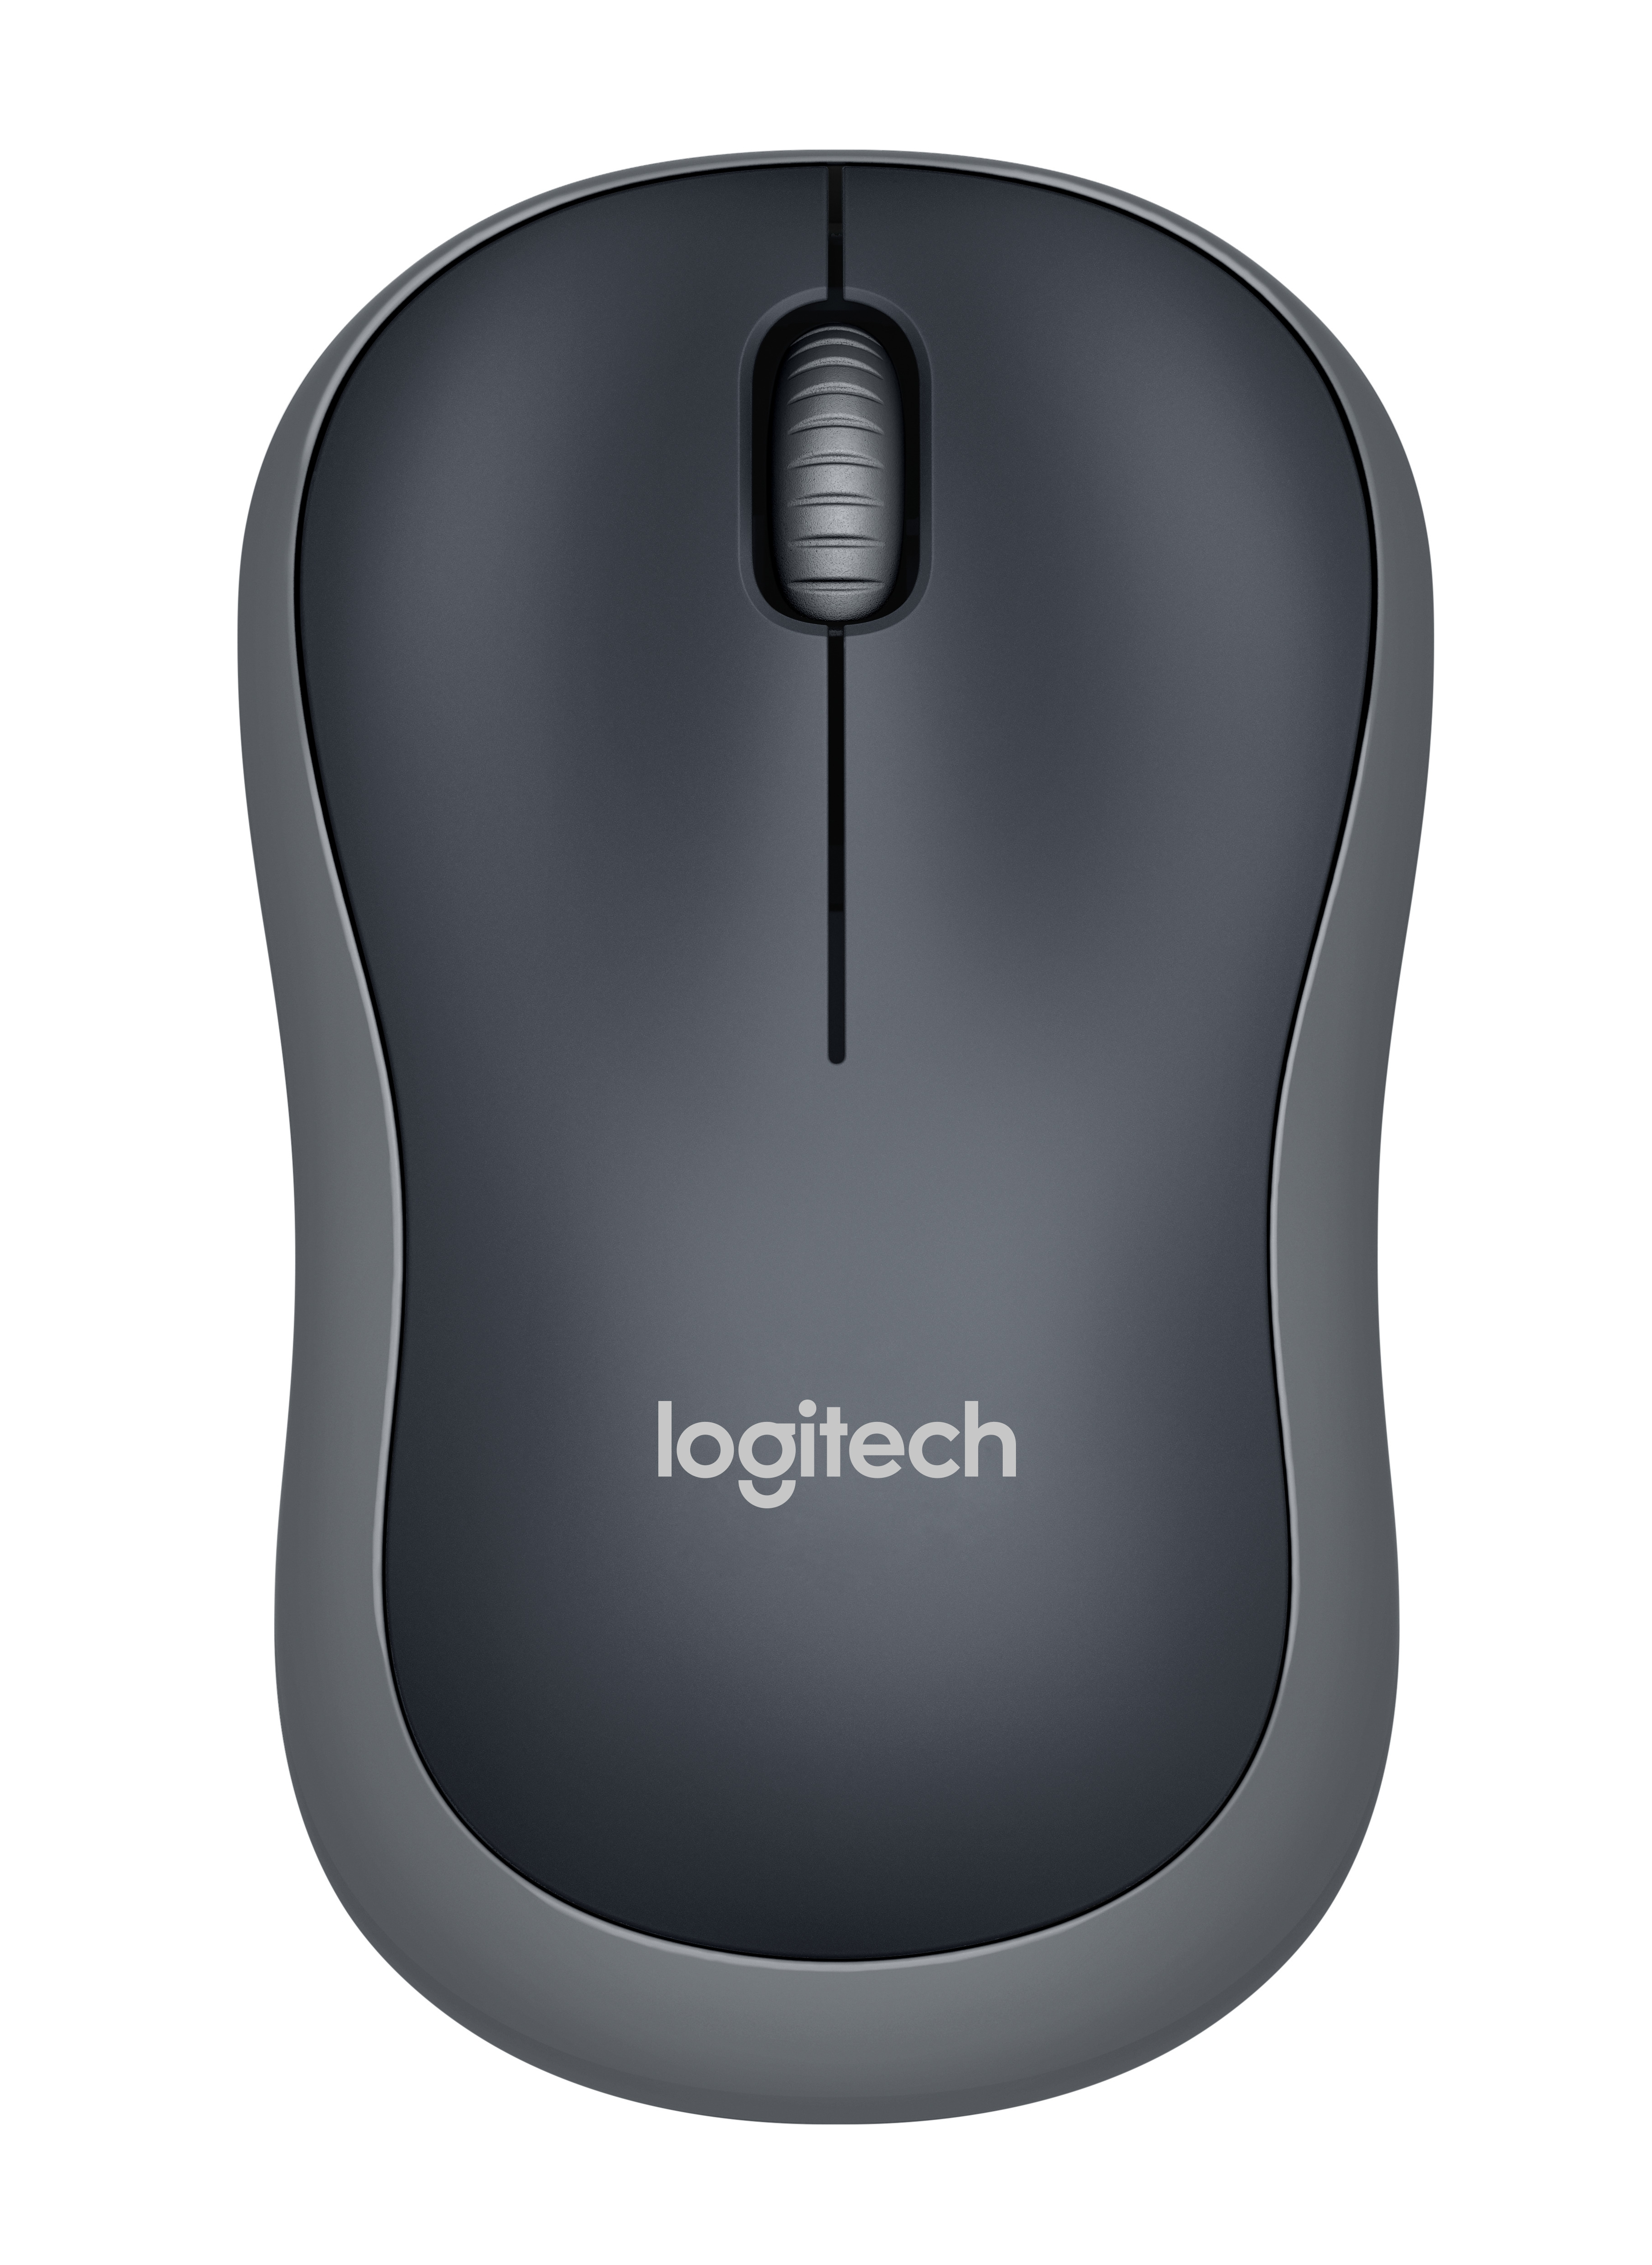 Logitech Mouse Software Mac Yosemite